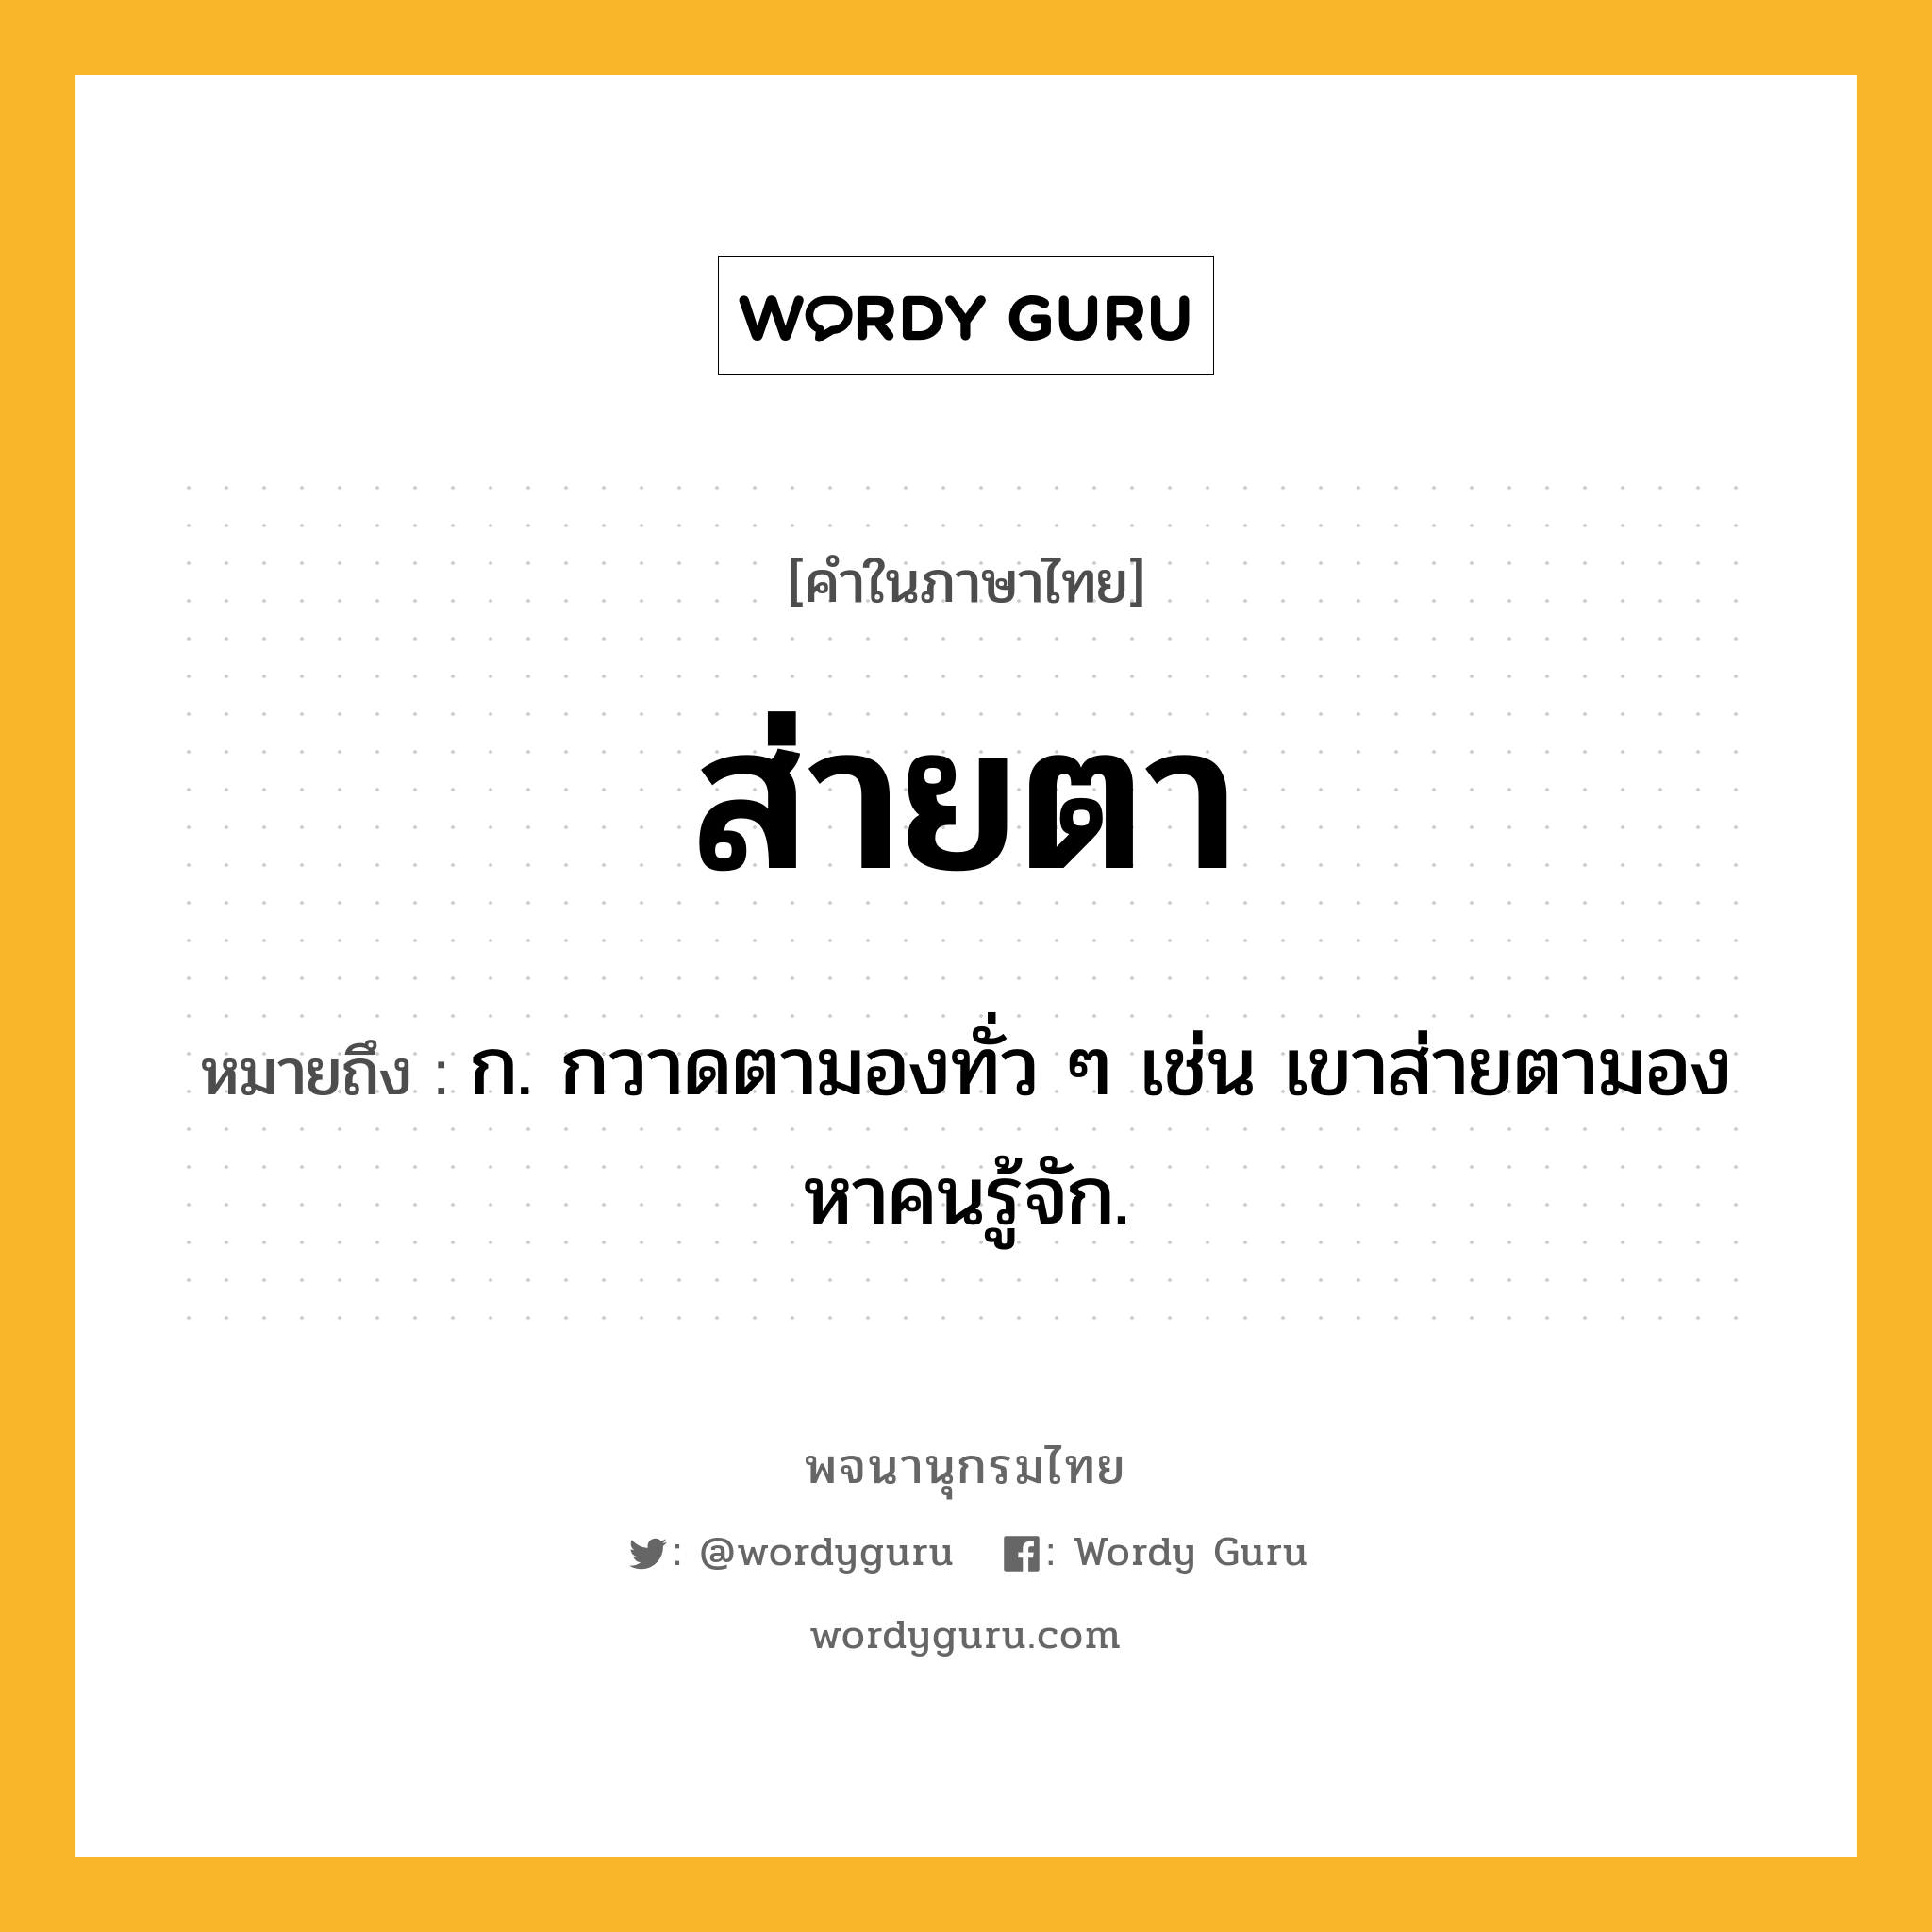 ส่ายตา หมายถึงอะไร?, คำในภาษาไทย ส่ายตา หมายถึง ก. กวาดตามองทั่ว ๆ เช่น เขาส่ายตามองหาคนรู้จัก.